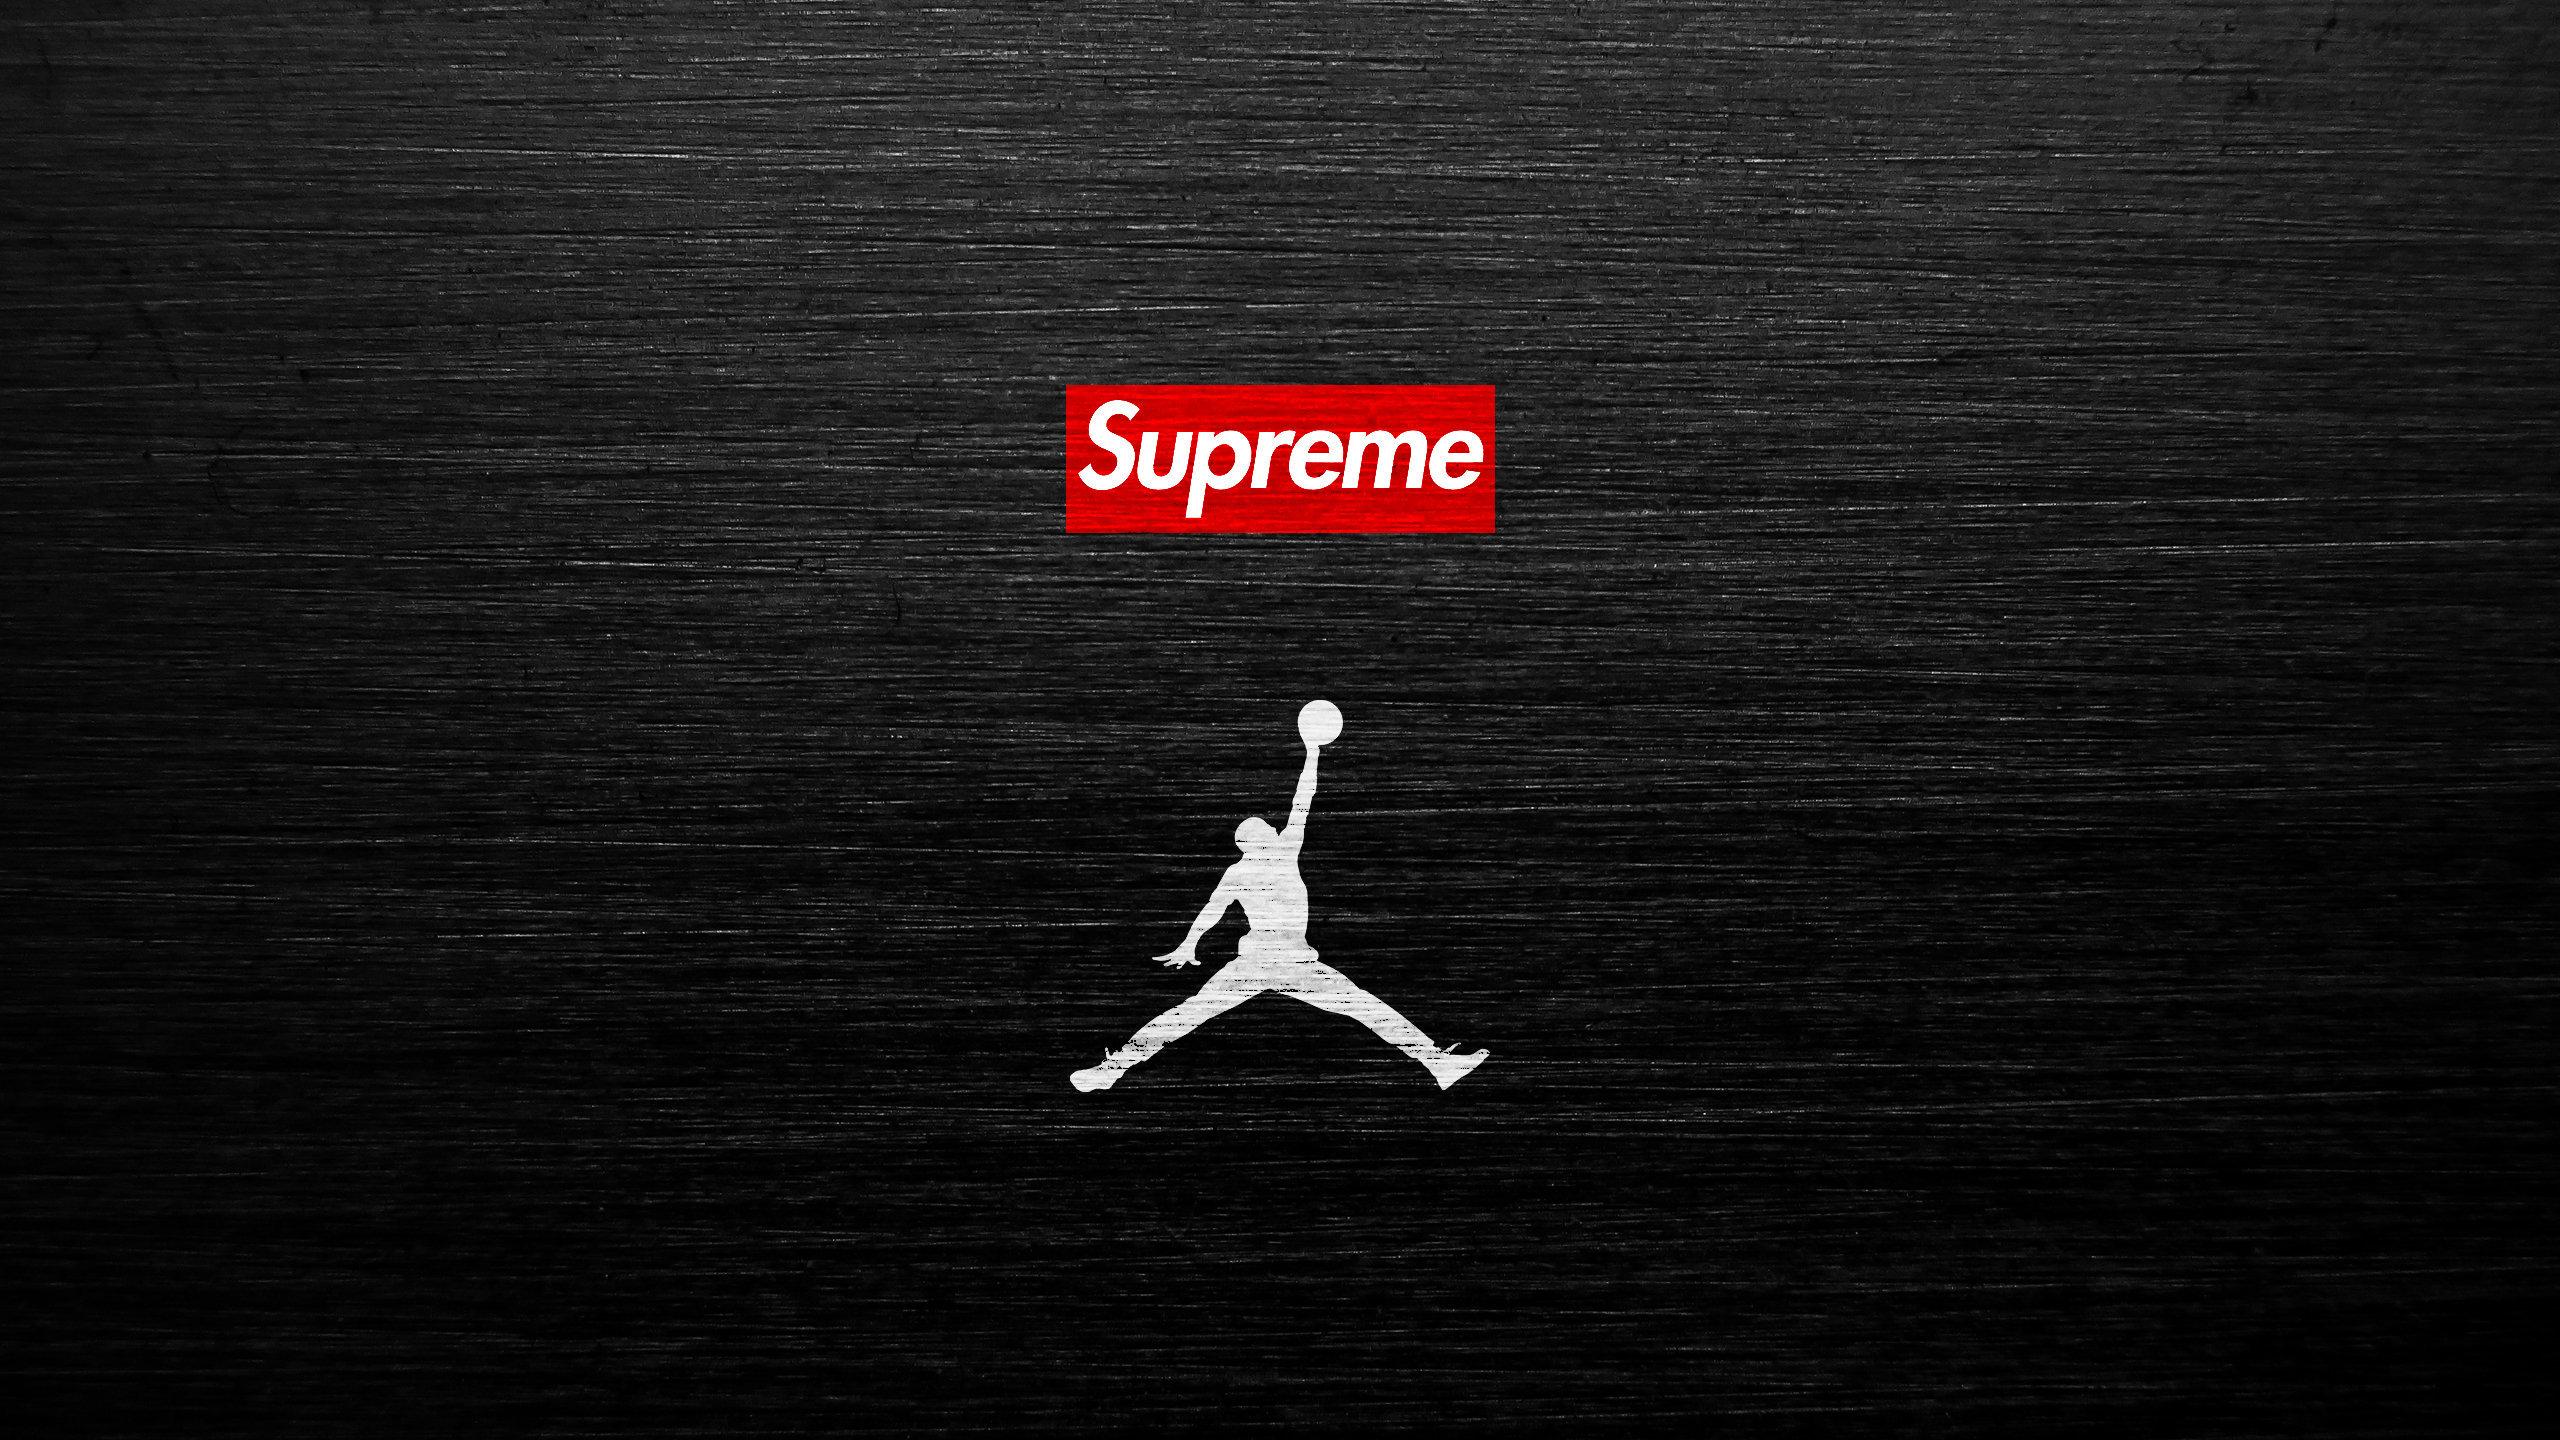 Download The Air Jordan Supreme Wallpaper Below For